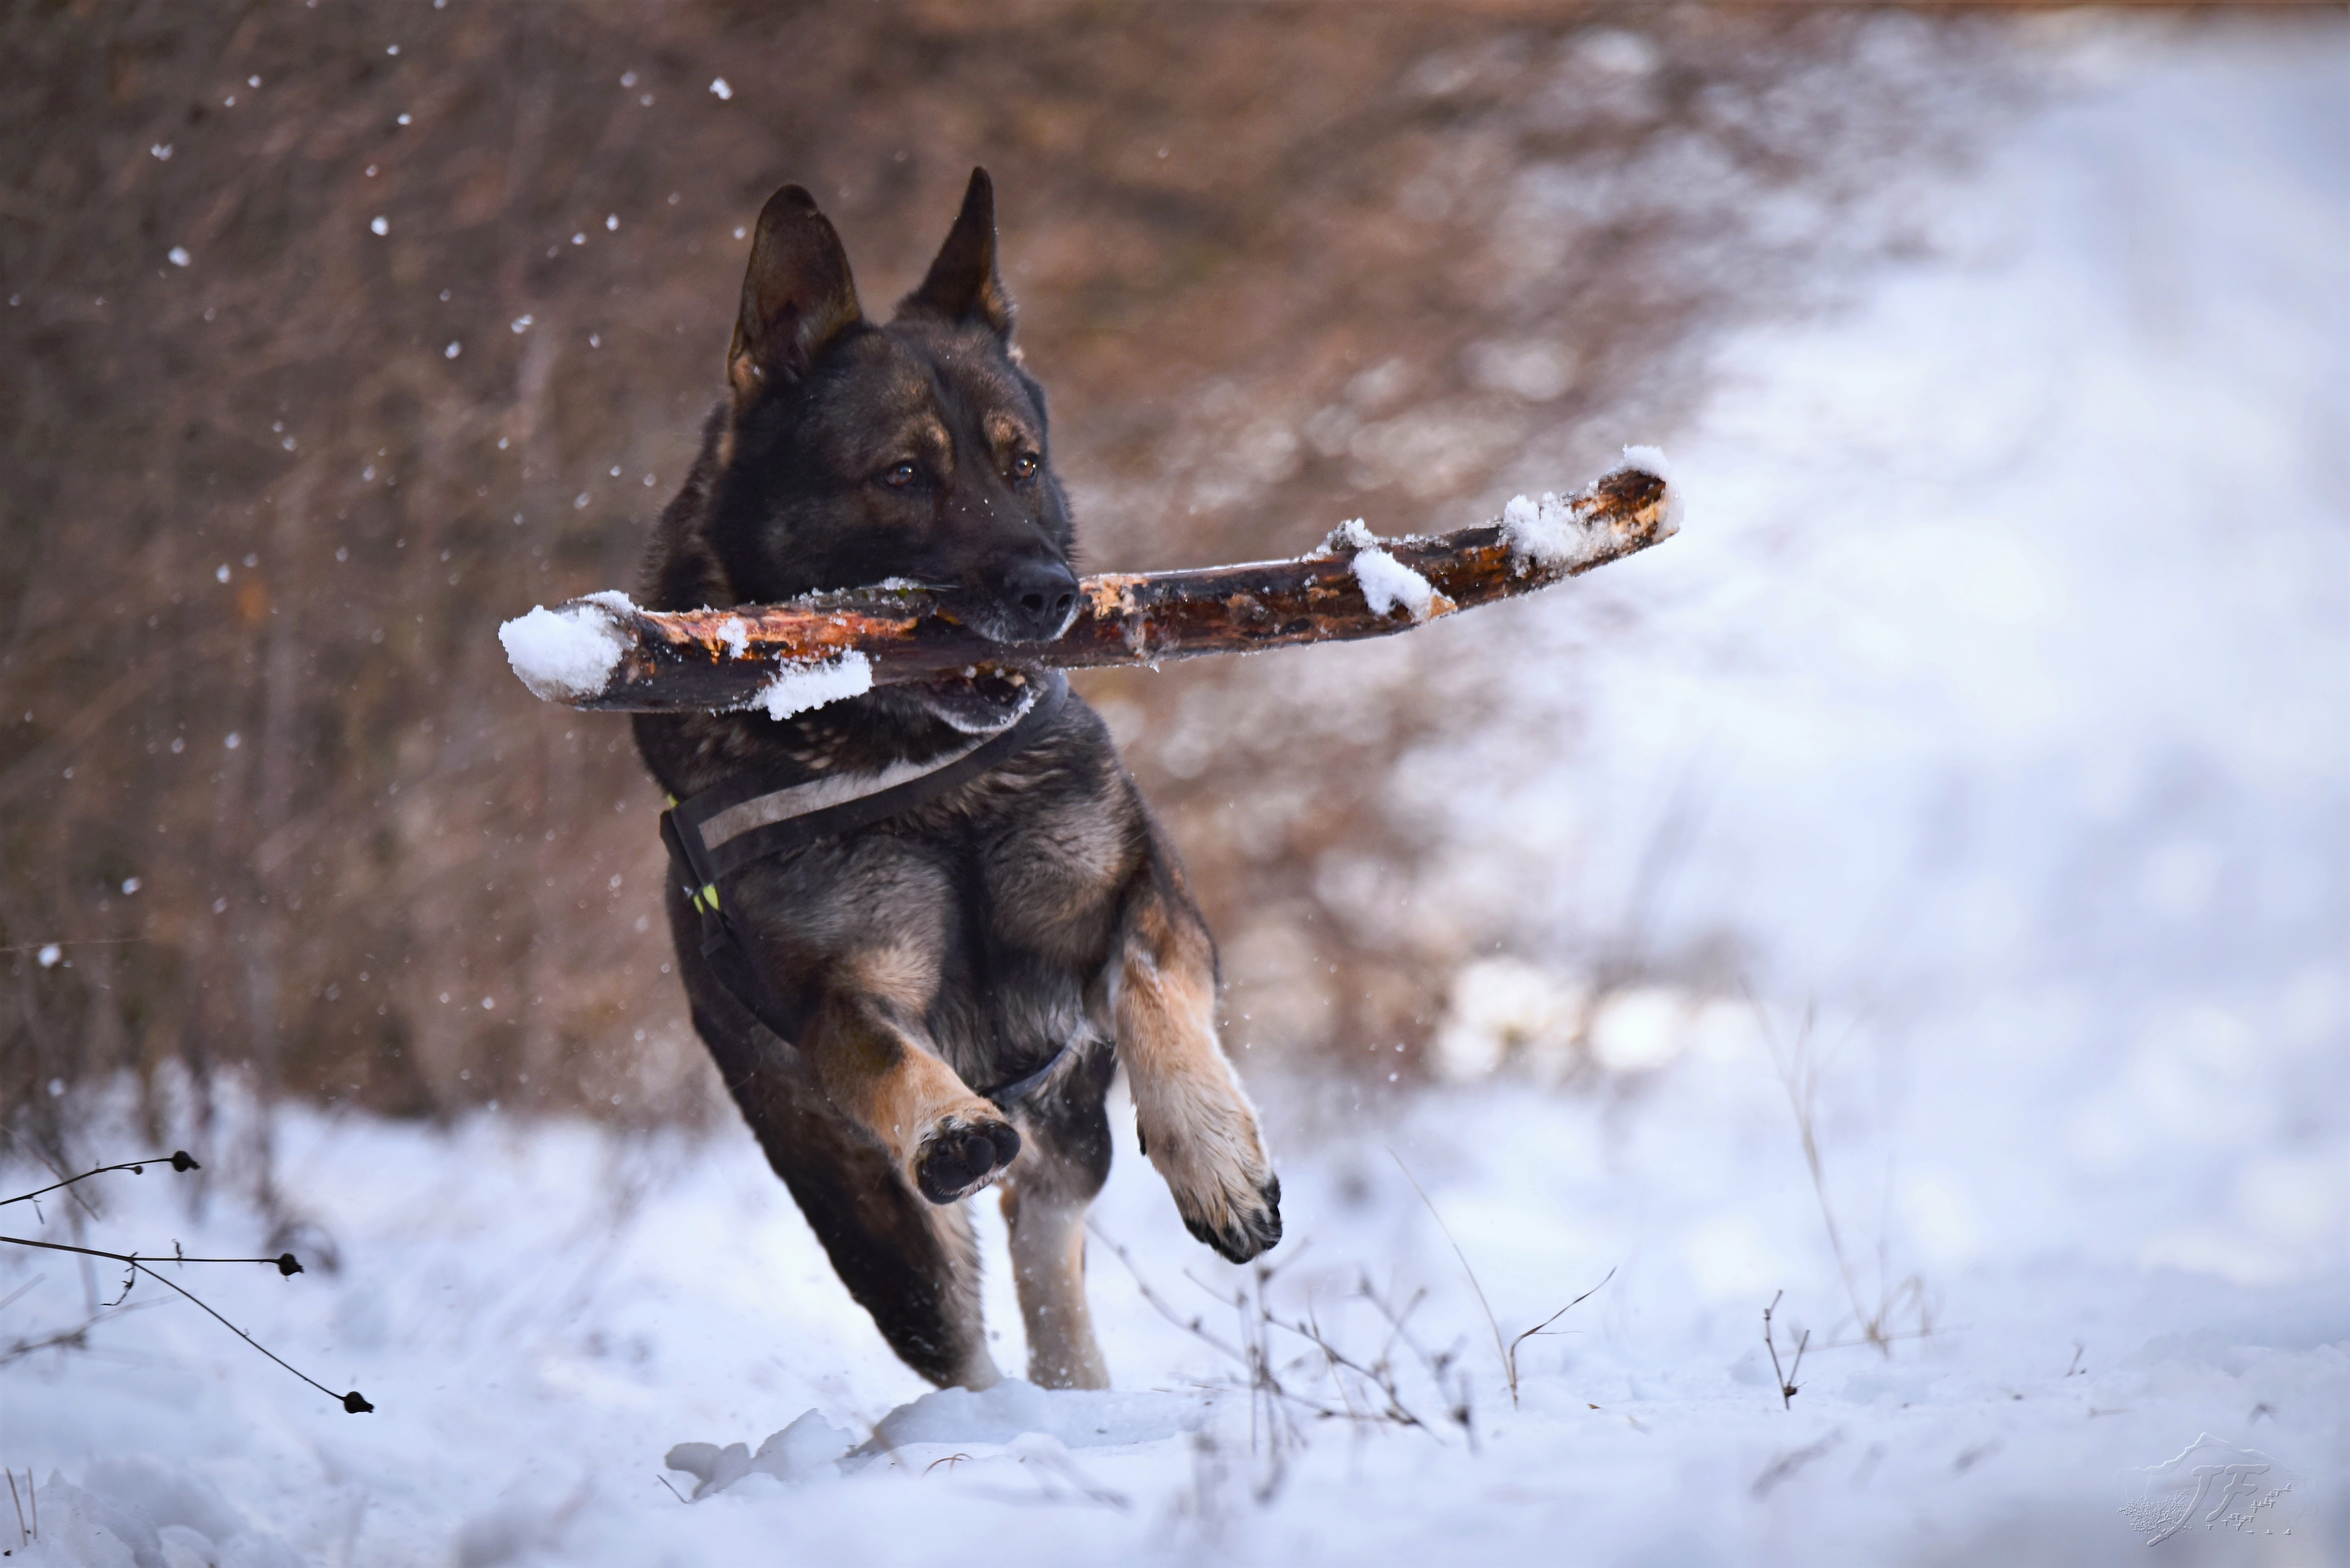 La imagen muestra a un perro llevando un palo.